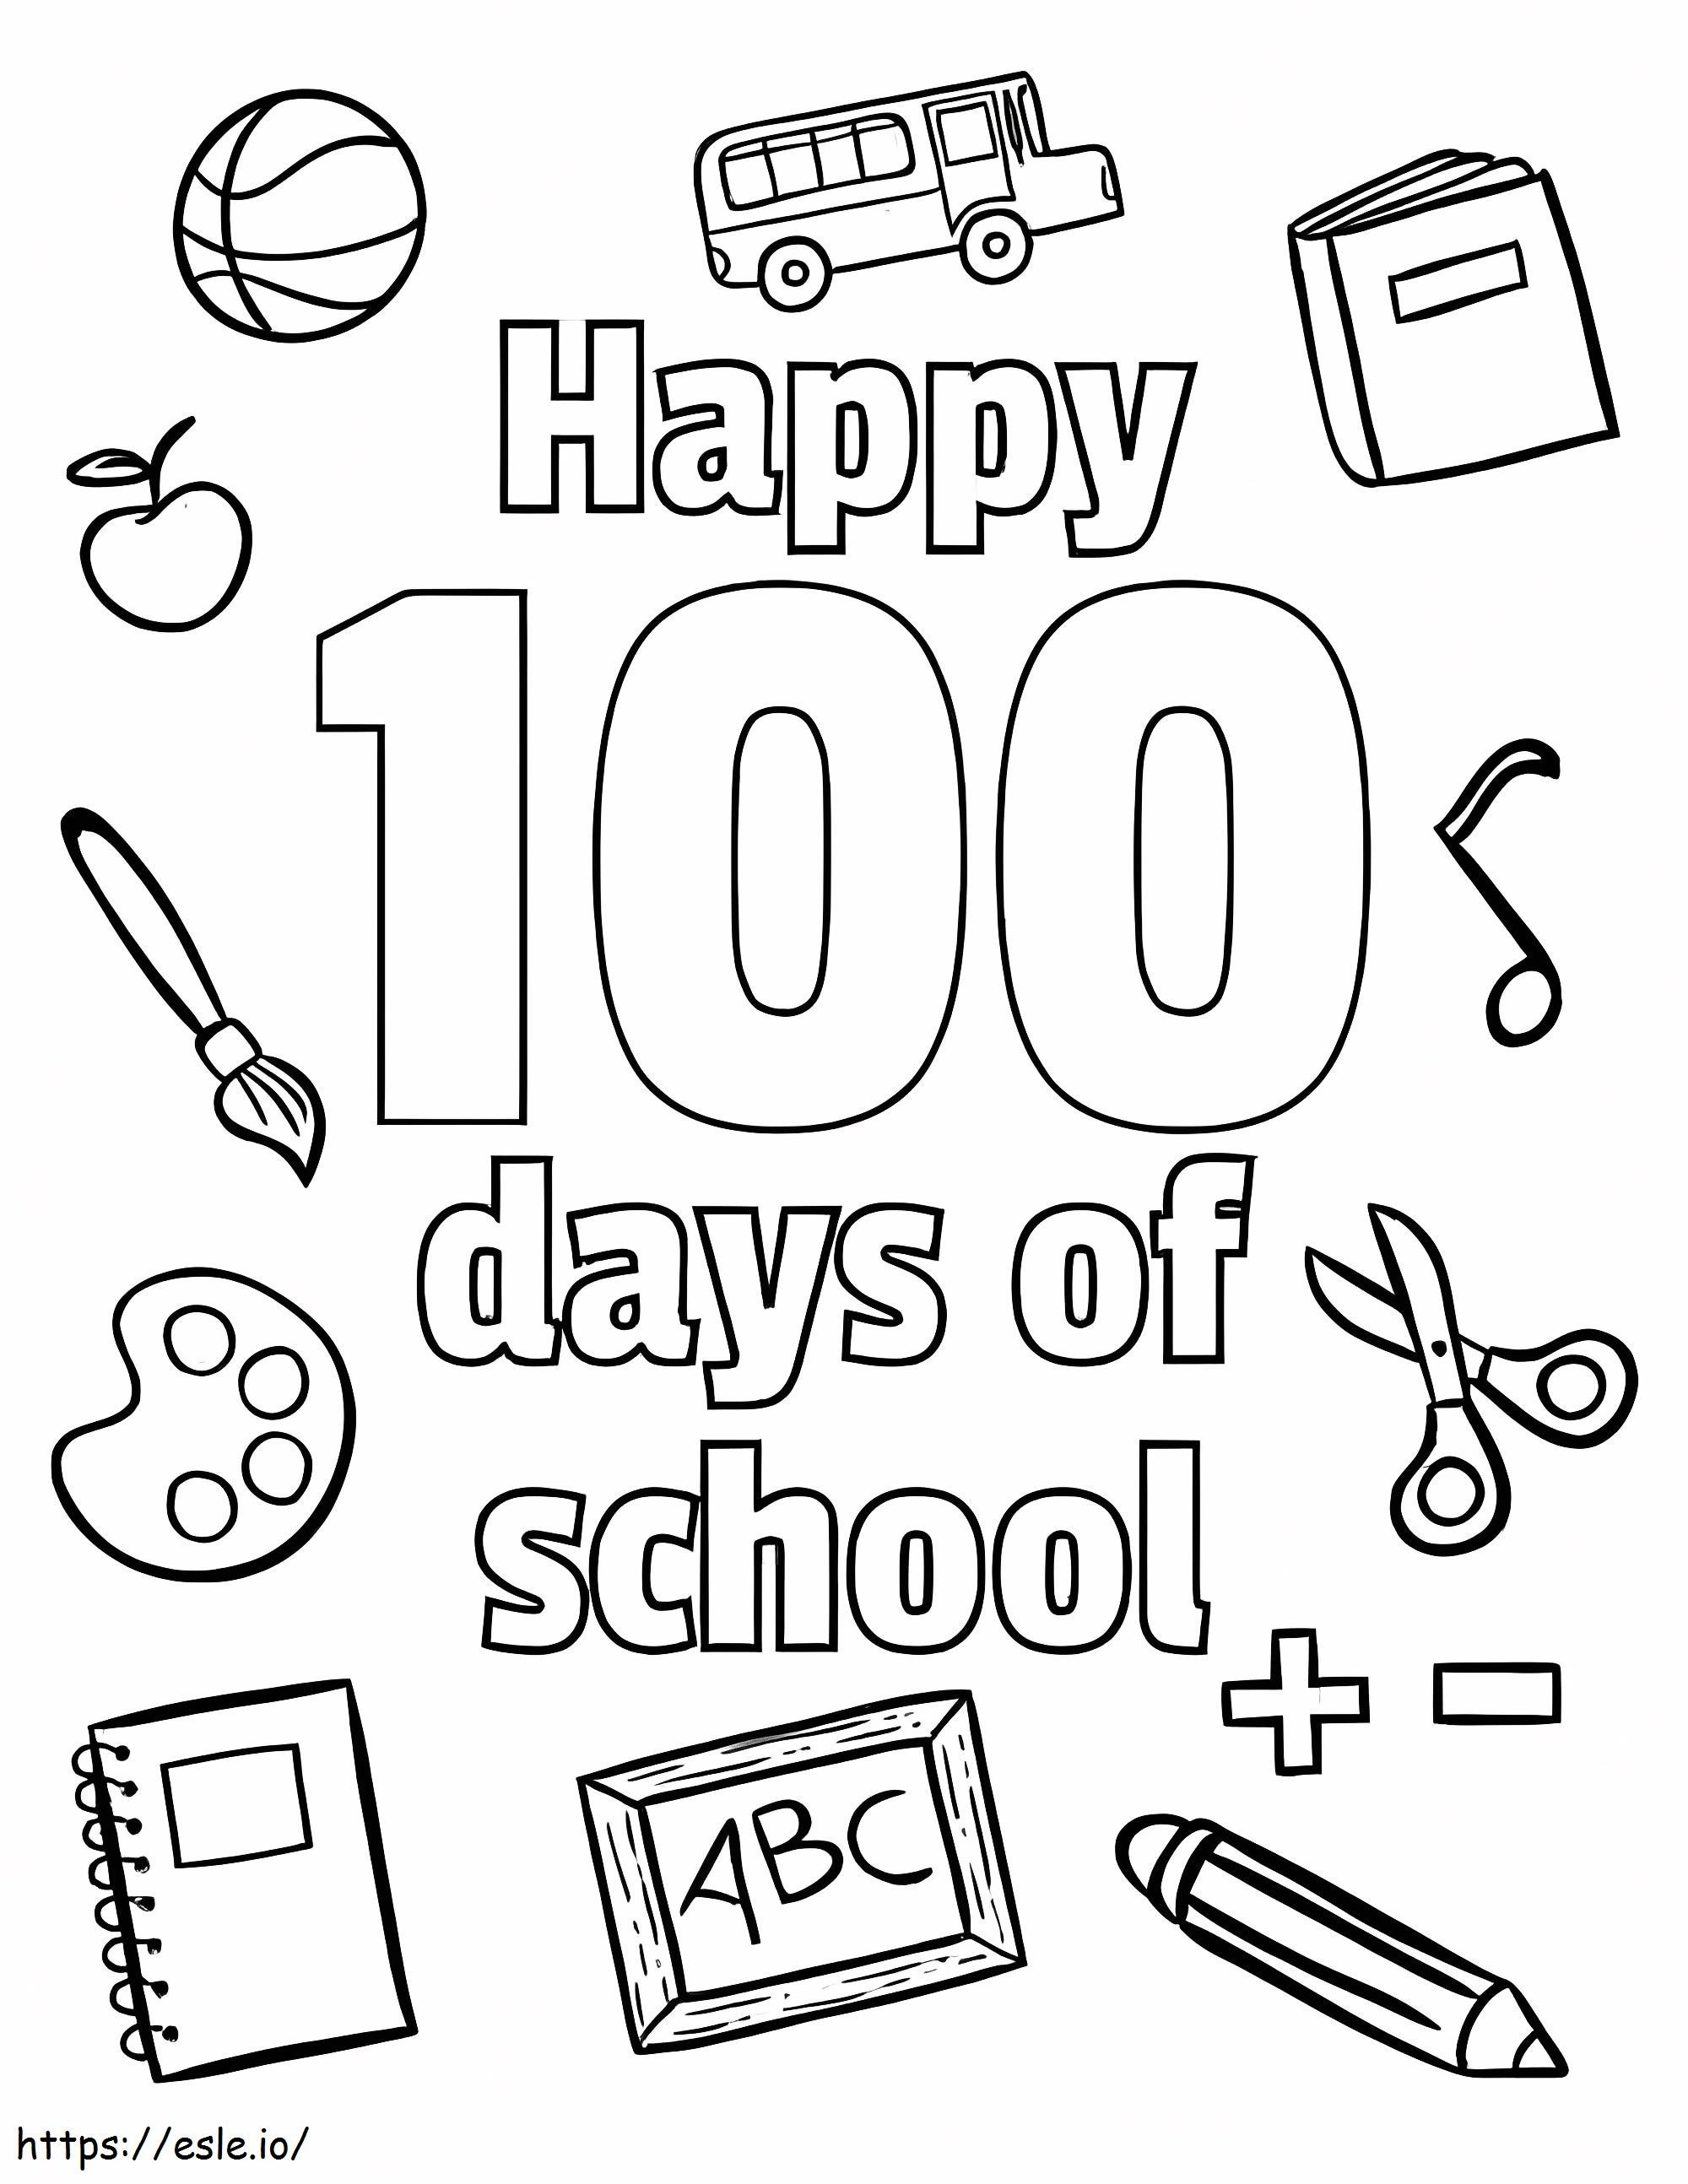 100esimo giorno di scuola stampabile gratuitamente da colorare